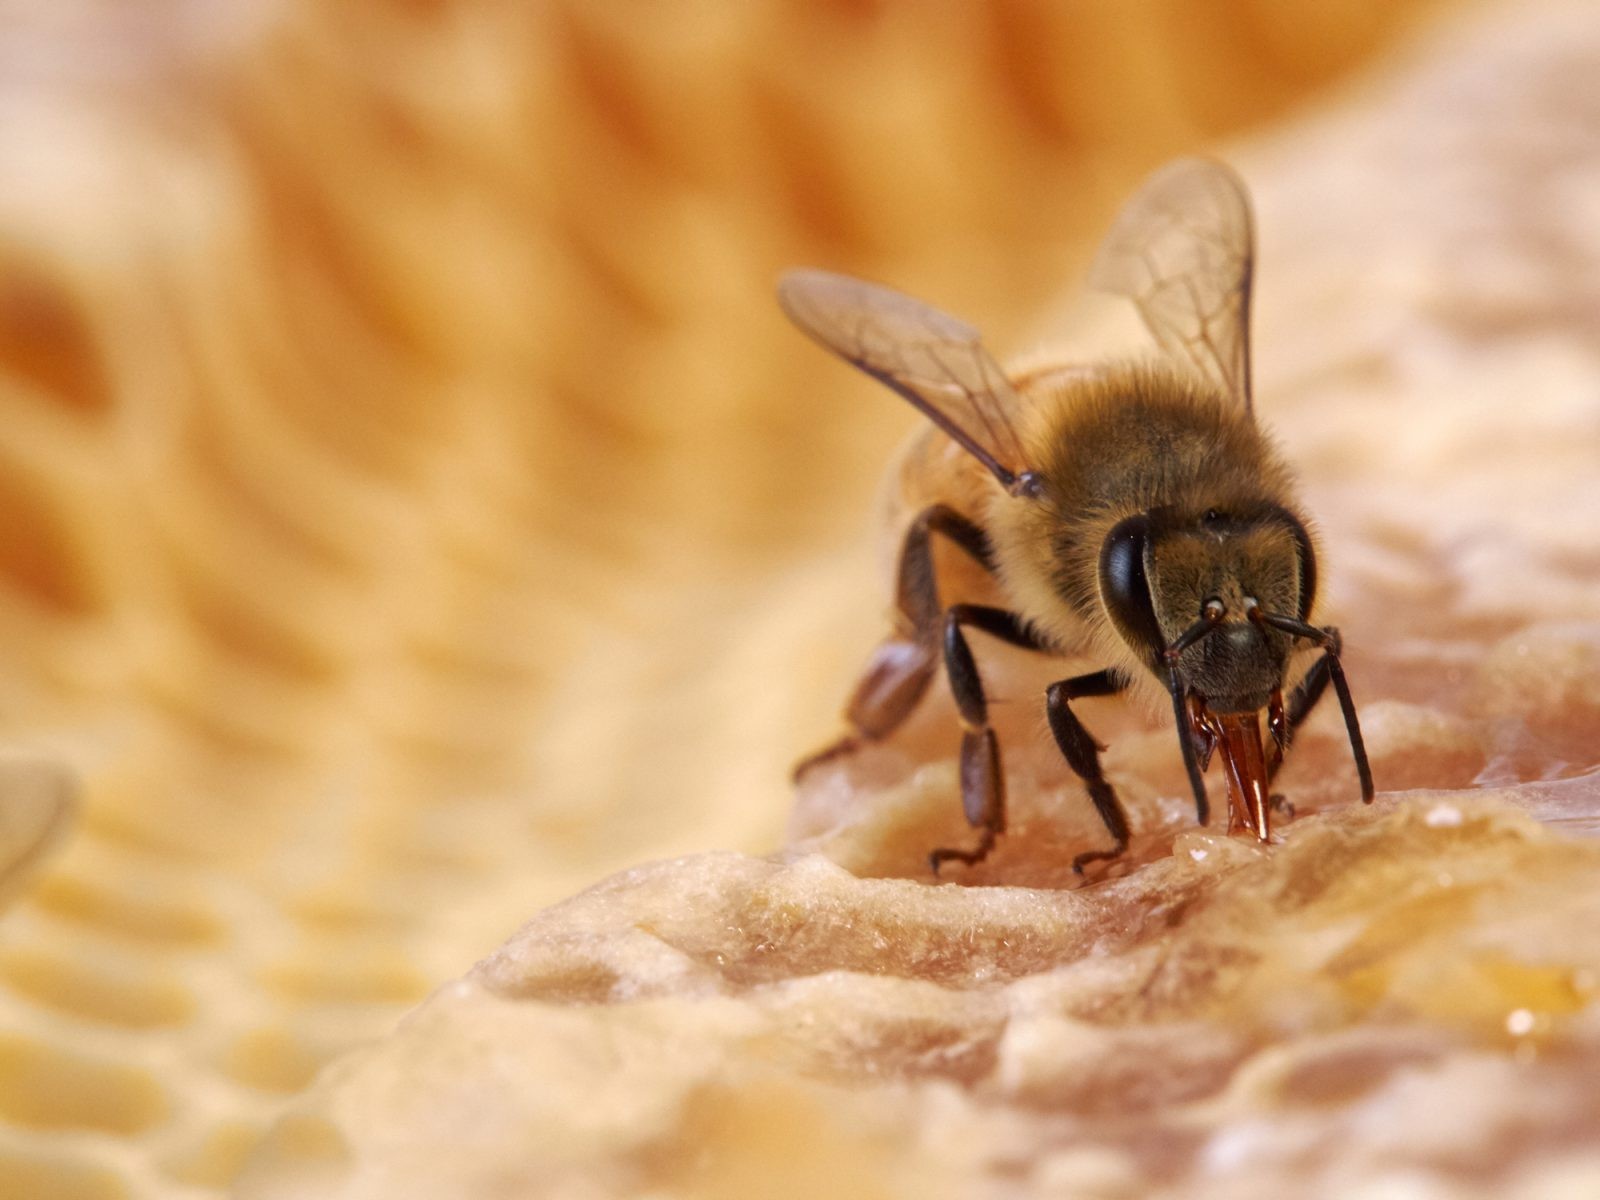 Nauczyli pszczoły wykrywać COVID-19. Nietypowy pomysł holenderskiego startupu